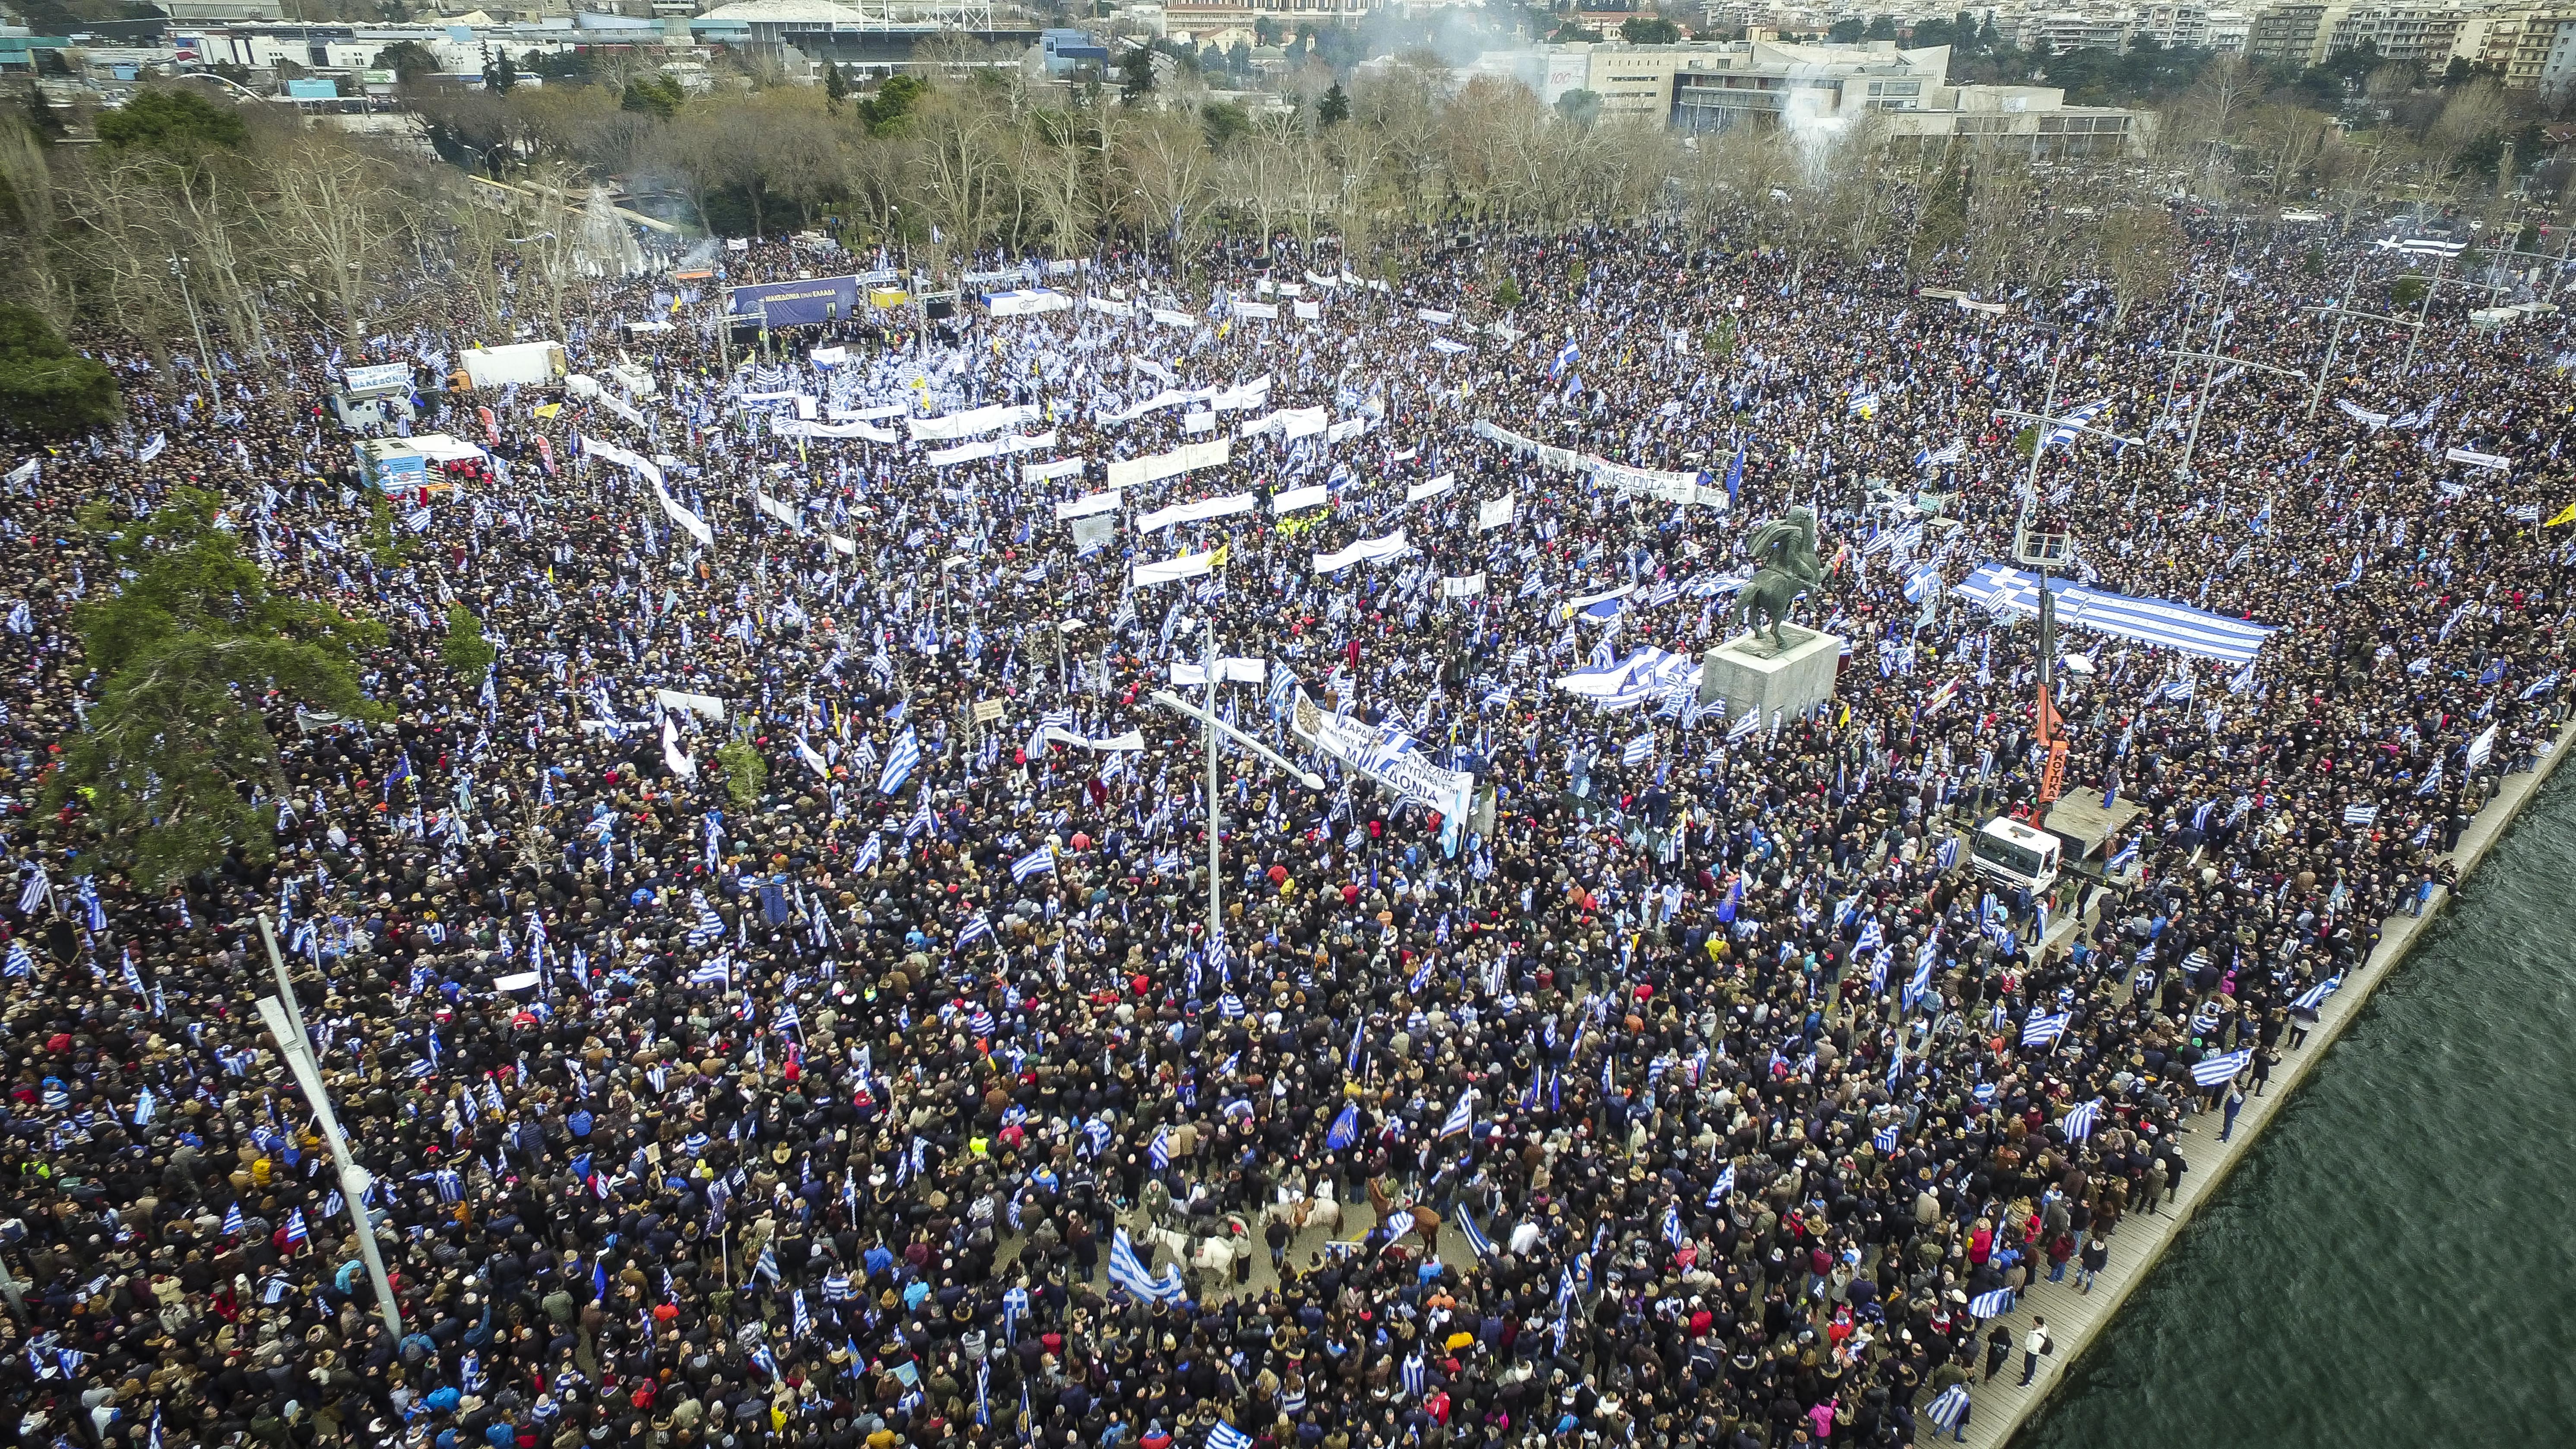 Ισχυρό μήνυμα στην κυβέρνηση από το συλλαλητήριο για το Σκοπιανό [Εικόνες & Βίντεο]